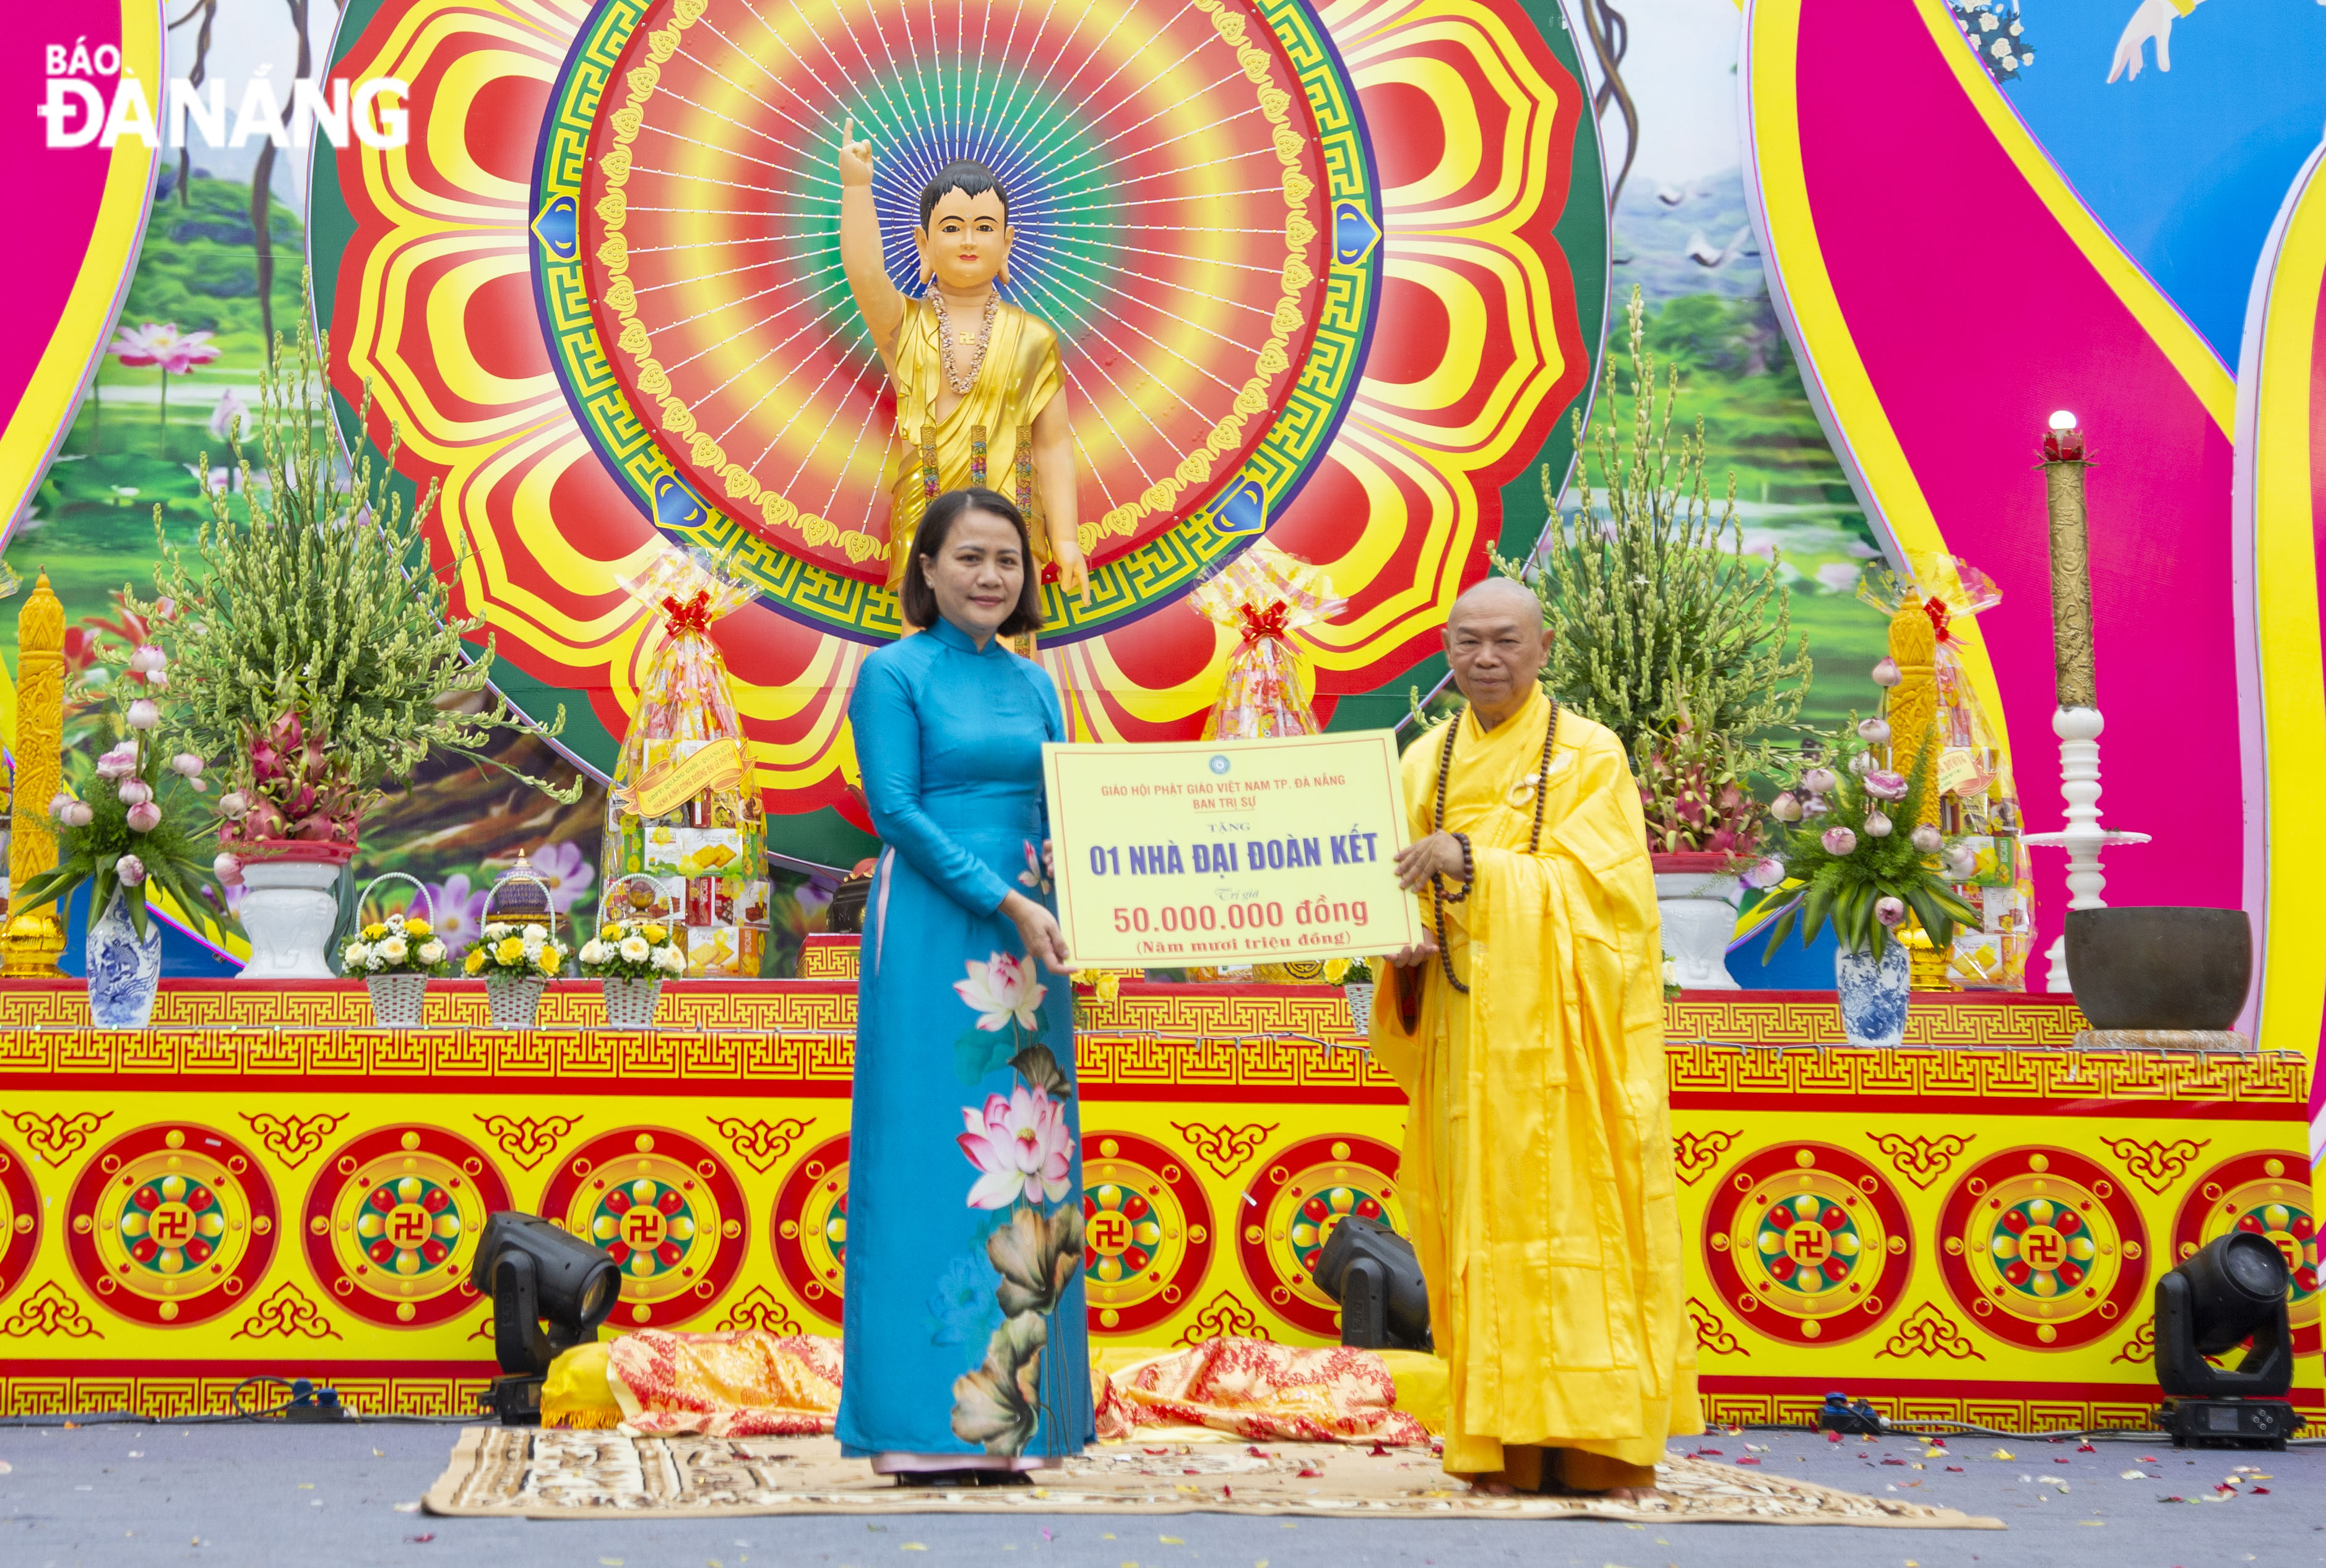 , Ban Trị sự Giáo hội Phật giáo Việt Nam thành phố trao tặng Ủy ban MTTQ Việt Nam thành phố 1 nhà Đại đoàn kết trị giá 50 triệu đồng. Ảnh: X.H